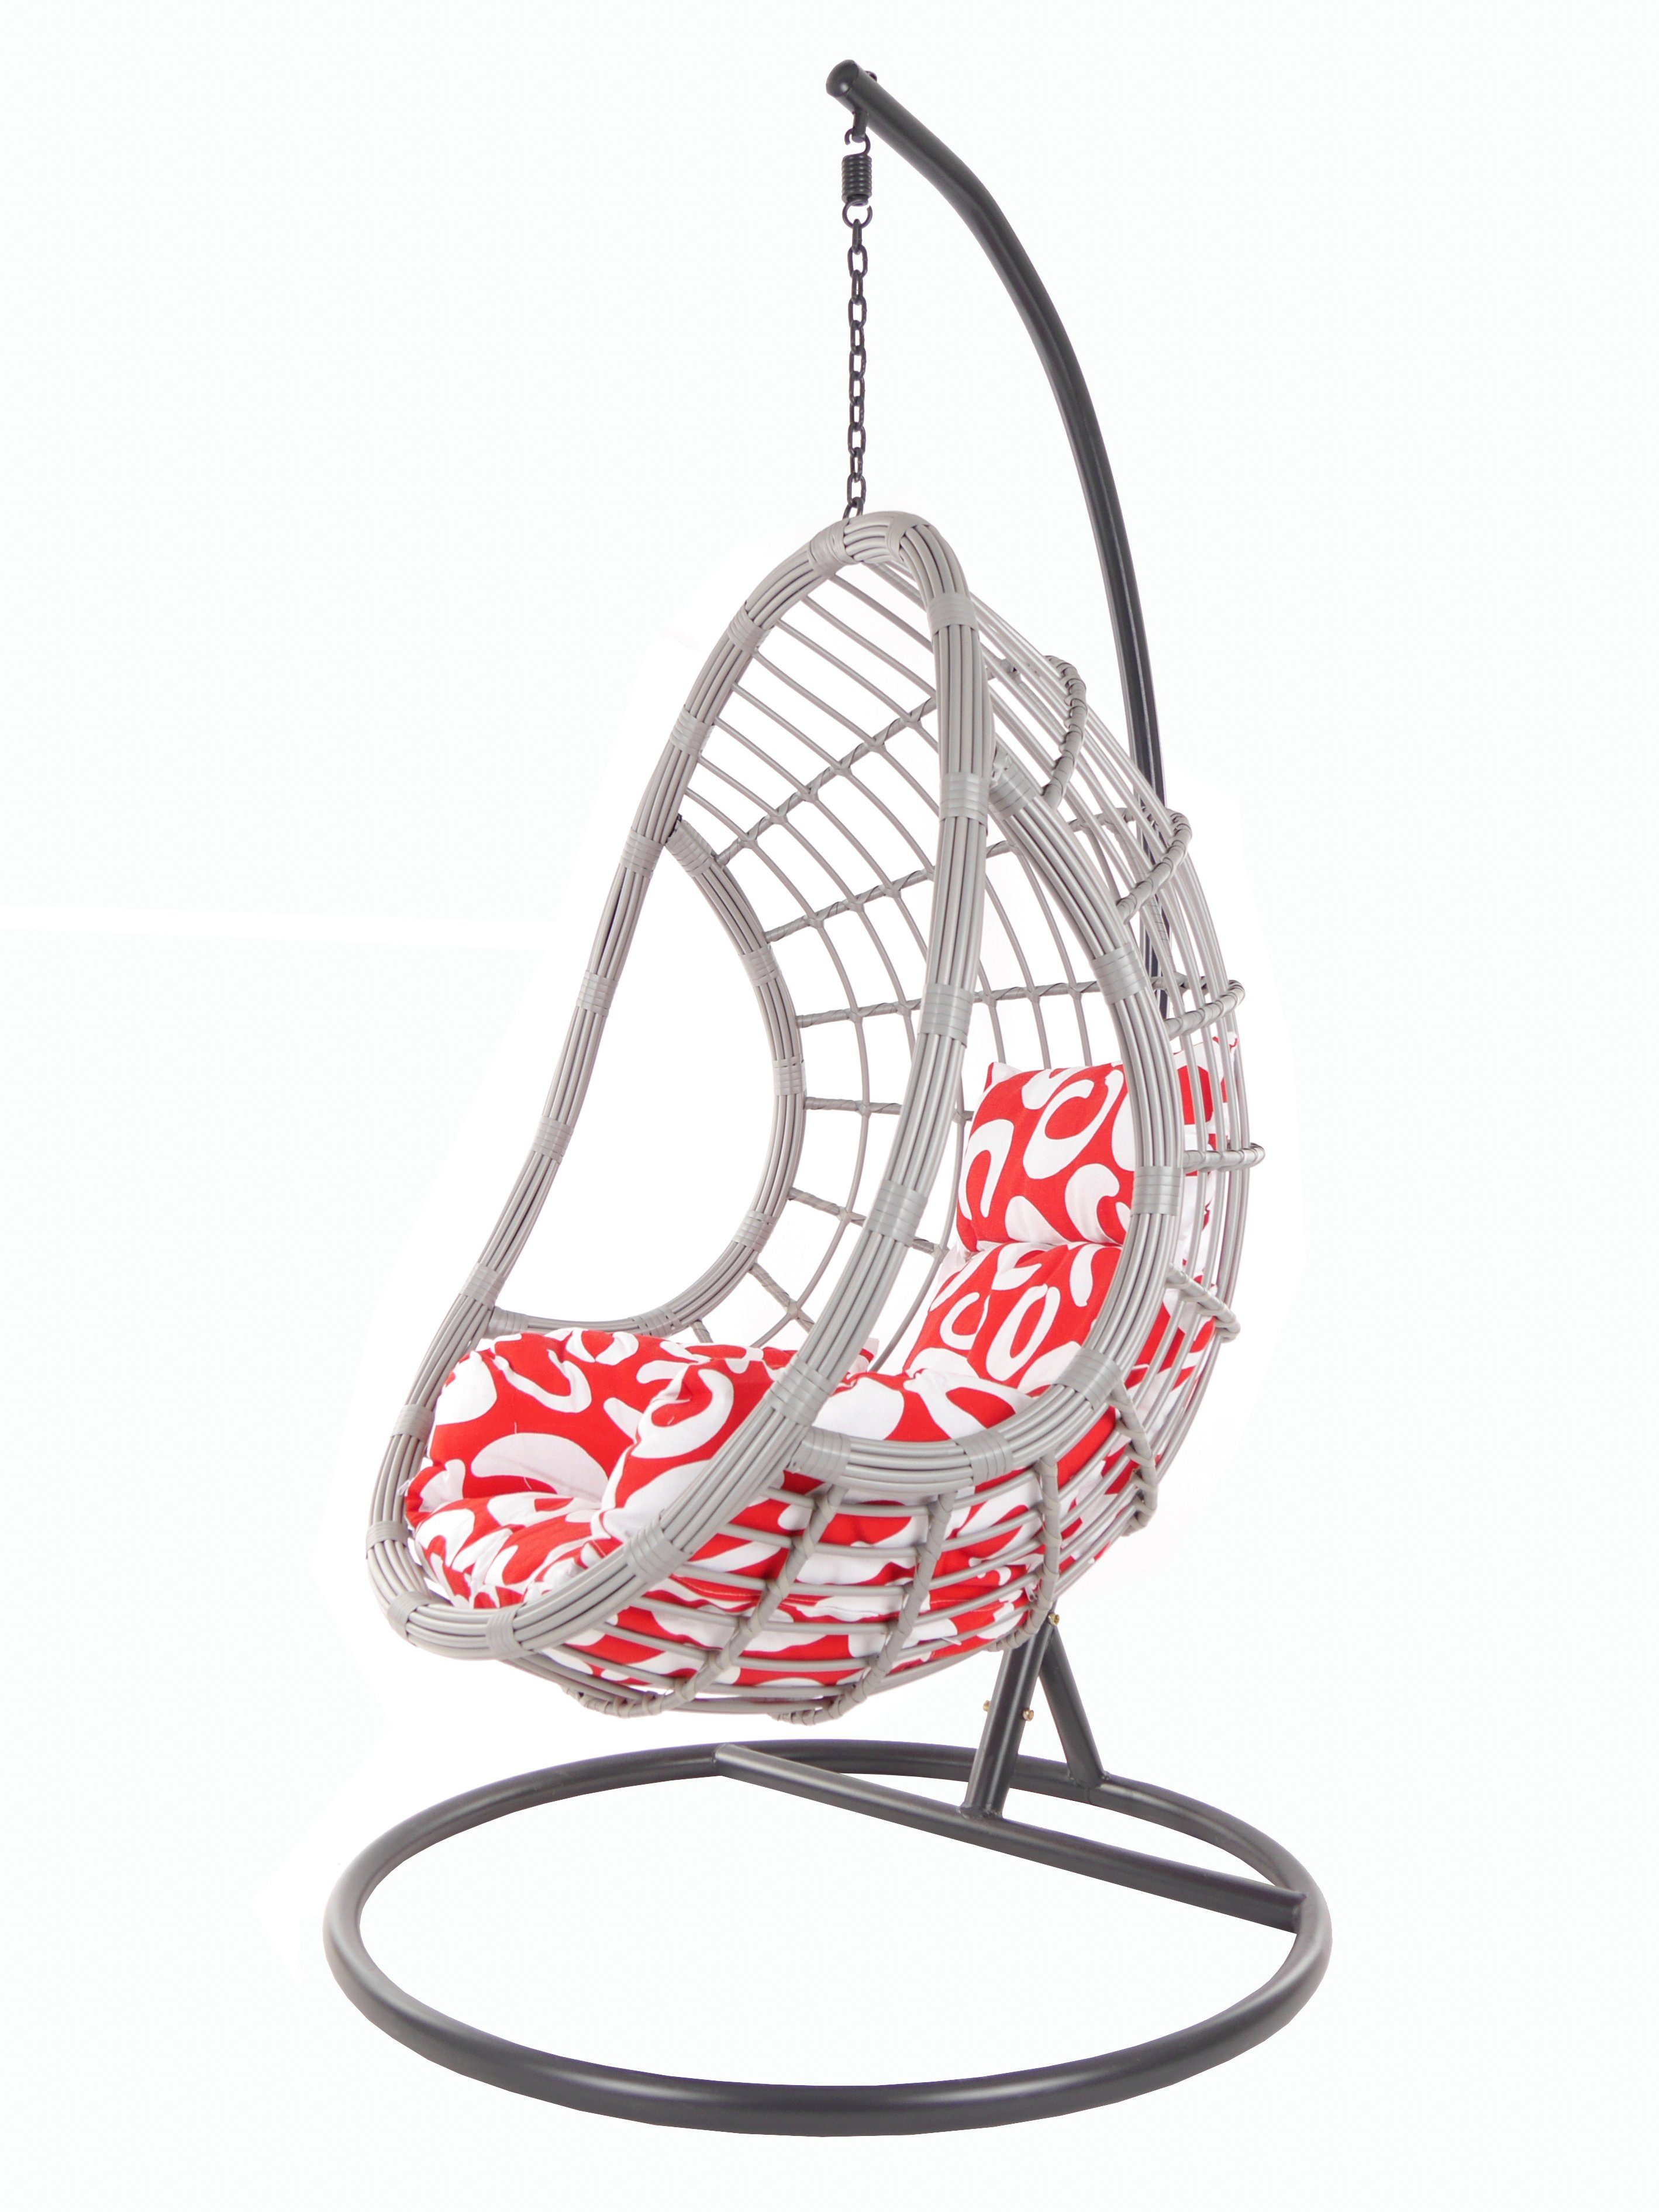 KIDEO Hängesessel PALMANOVA lightgrey, Swing Chair, Loungemöbel, Hängesessel mit Gestell und Kissen gemustert (3012 curly)